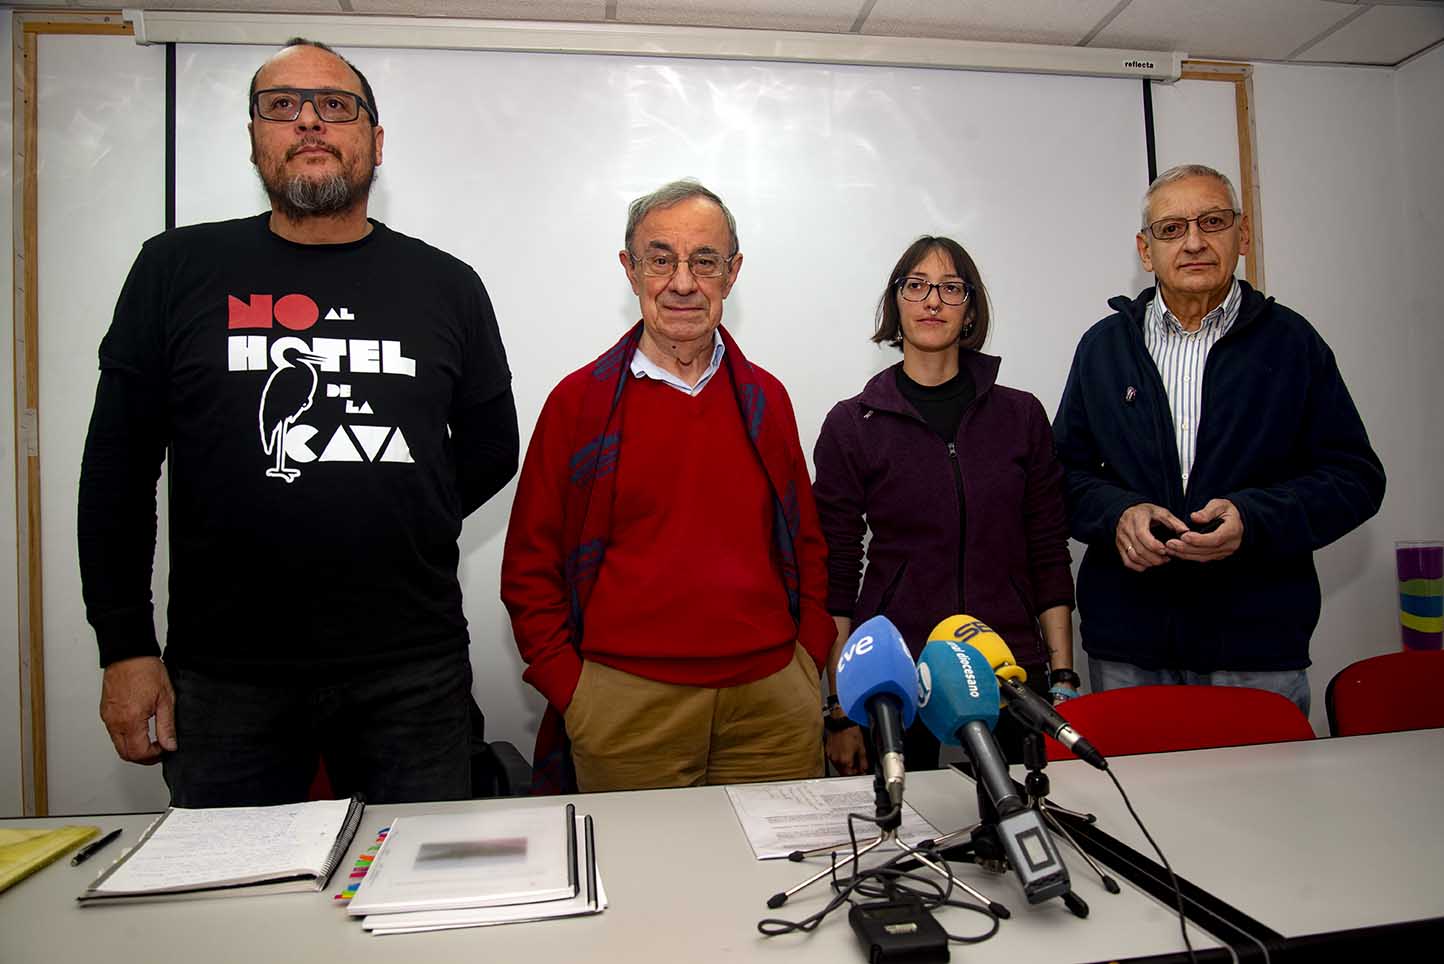 Representantes de los cuatro colectivos que se han mostrado totalmente en contra e indignados con la intención de construir un hotel en La Cava. Foto: Rebeca Arango.